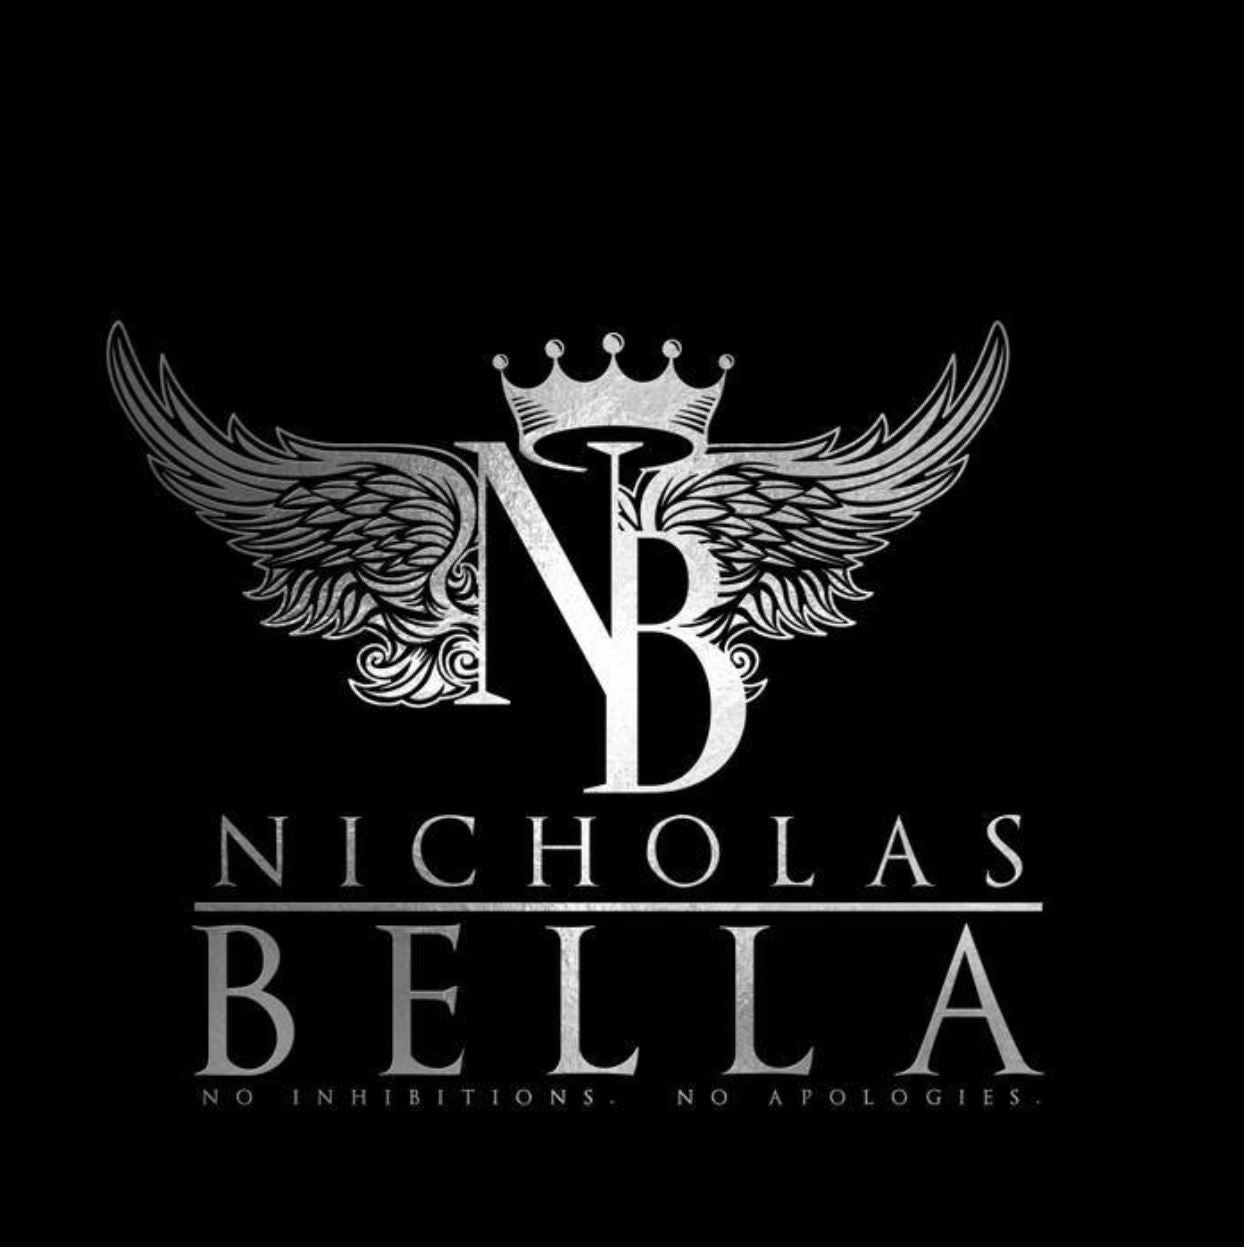 Nicholas Bella